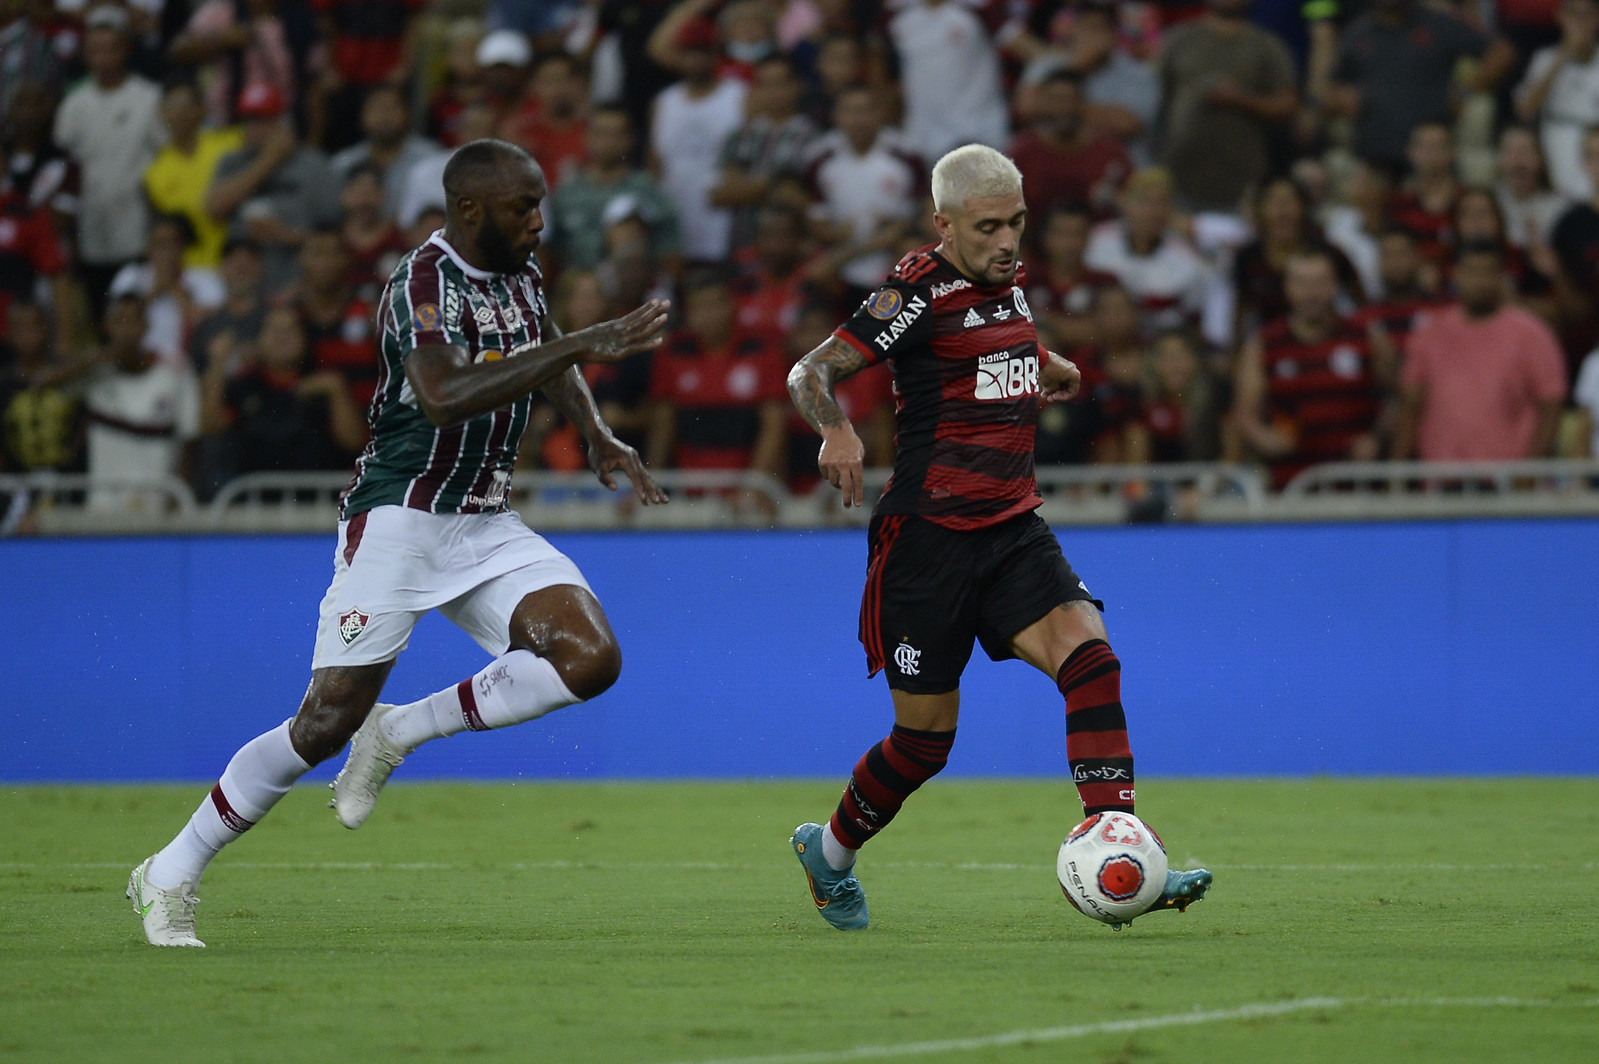 Atuações ENM: Flamengo volta a jogar mal e fica com o vice do Carioca; veja as notas